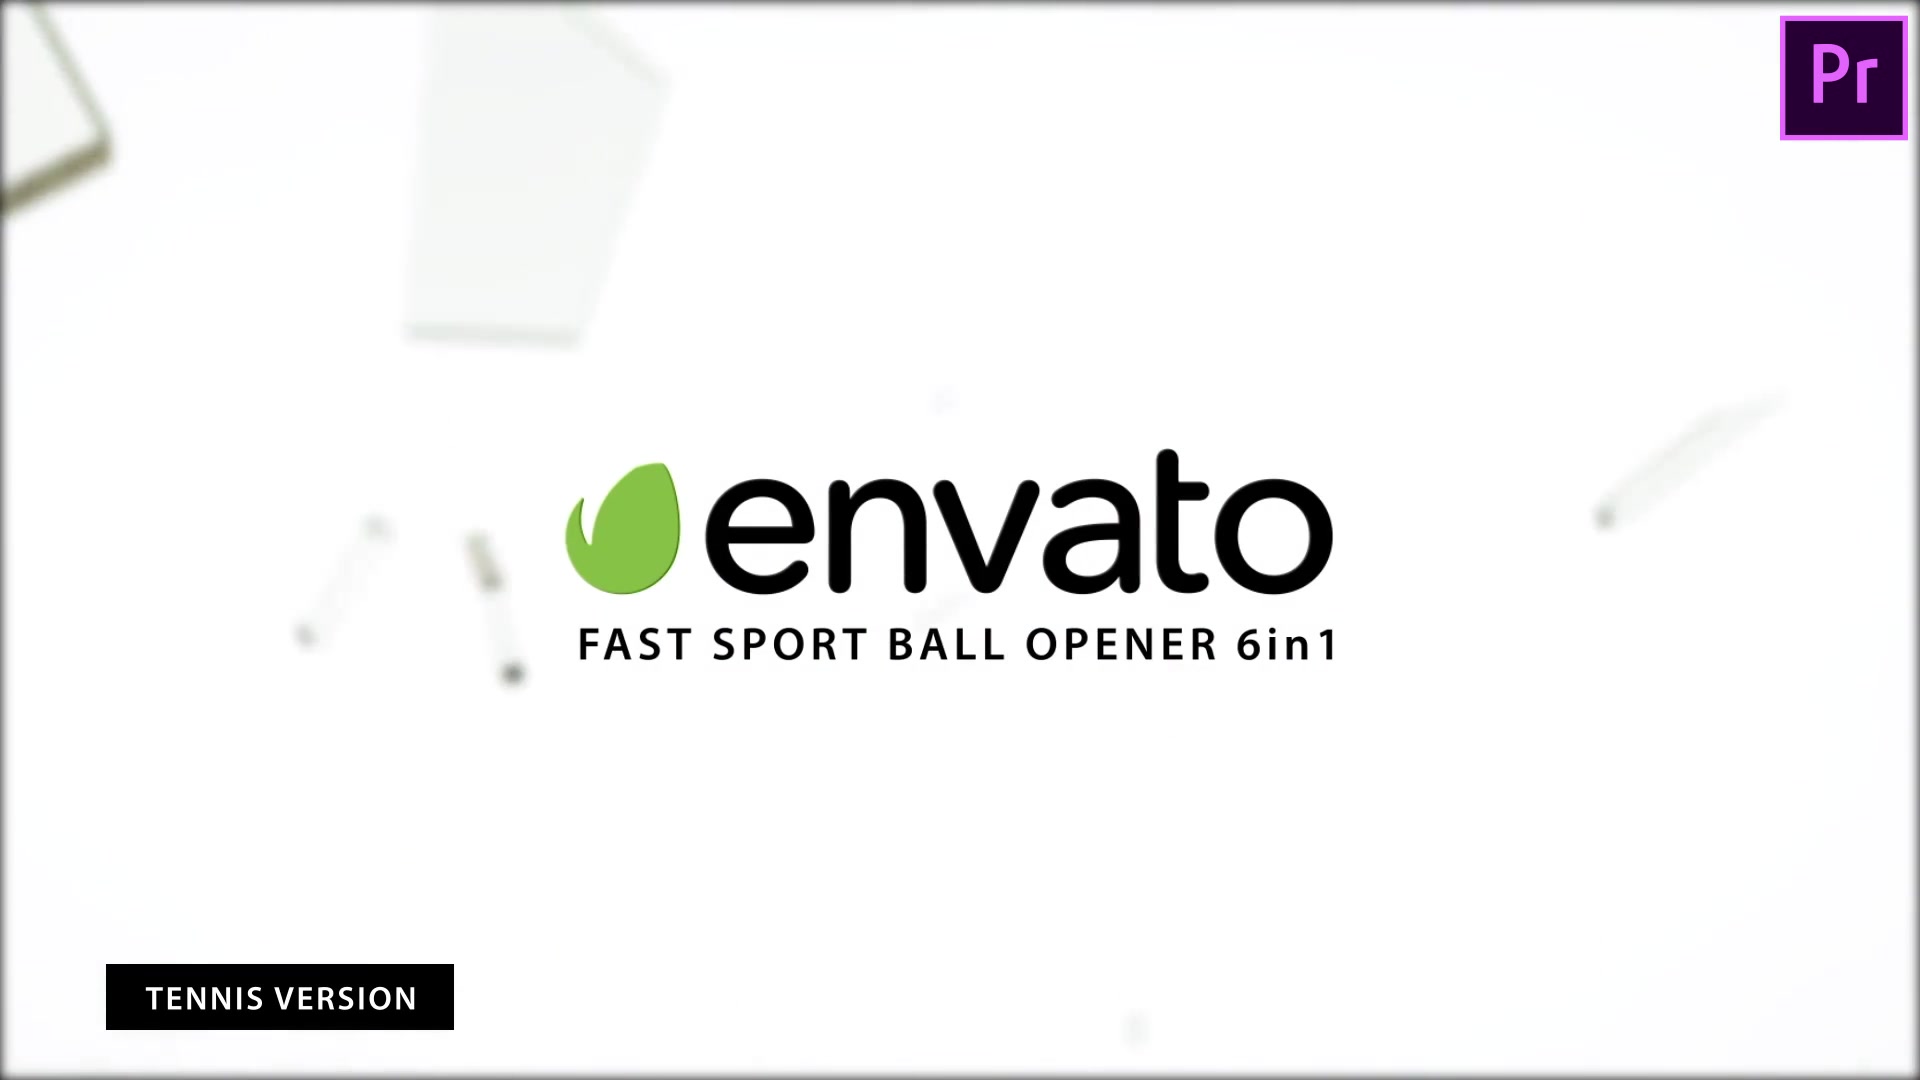 Fast Sport Ball Opener 7in1 Premiere Pro Videohive 38715469 Premiere Pro Image 8